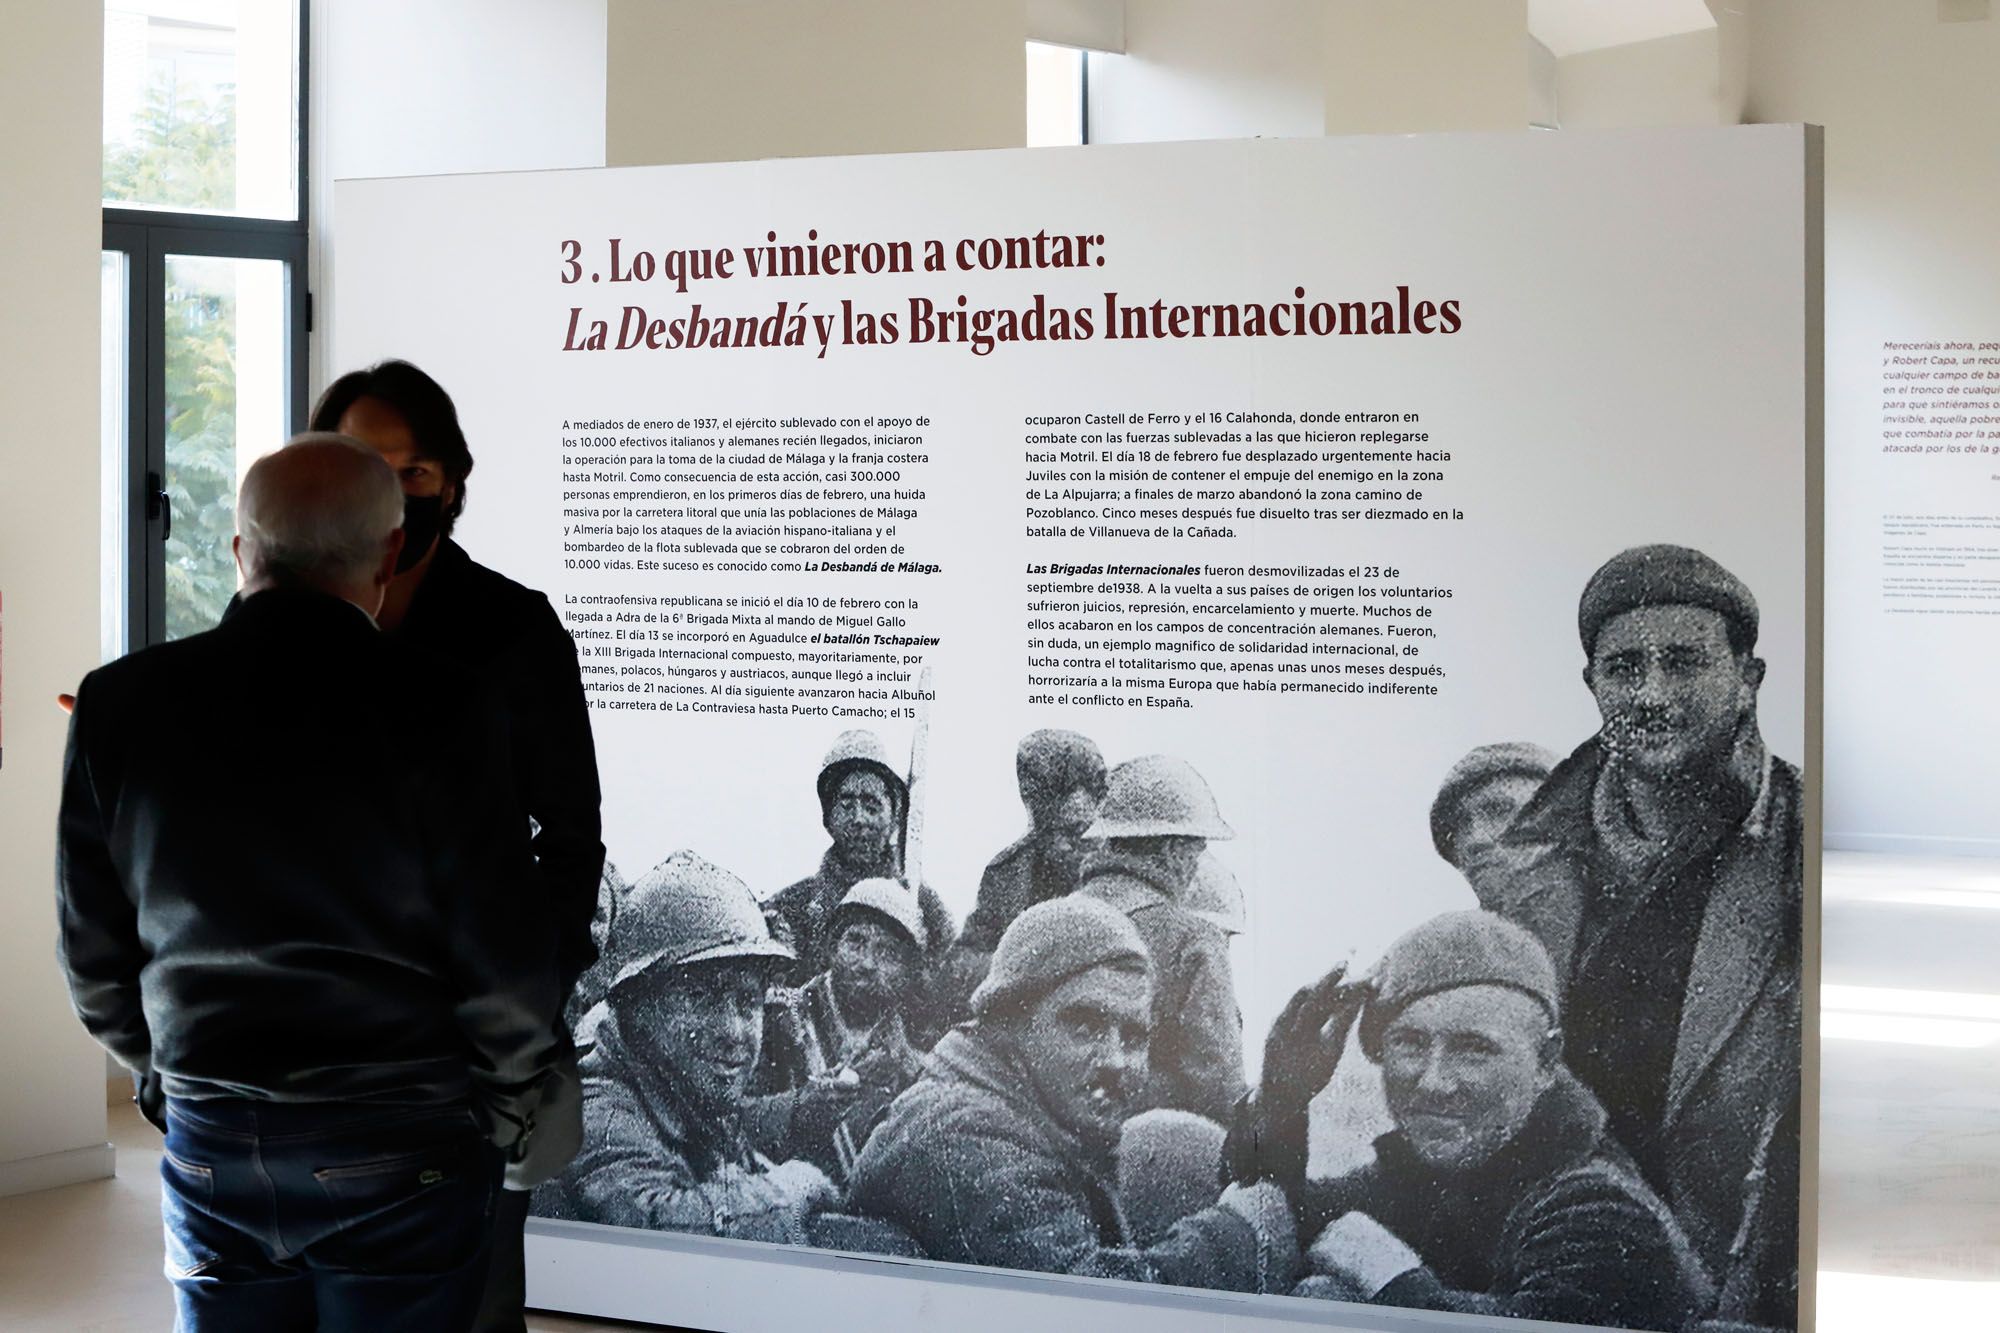 Exposición fotográfica de Gerda Taro y Robert Capa en la sede de la UNIA de Málaga.